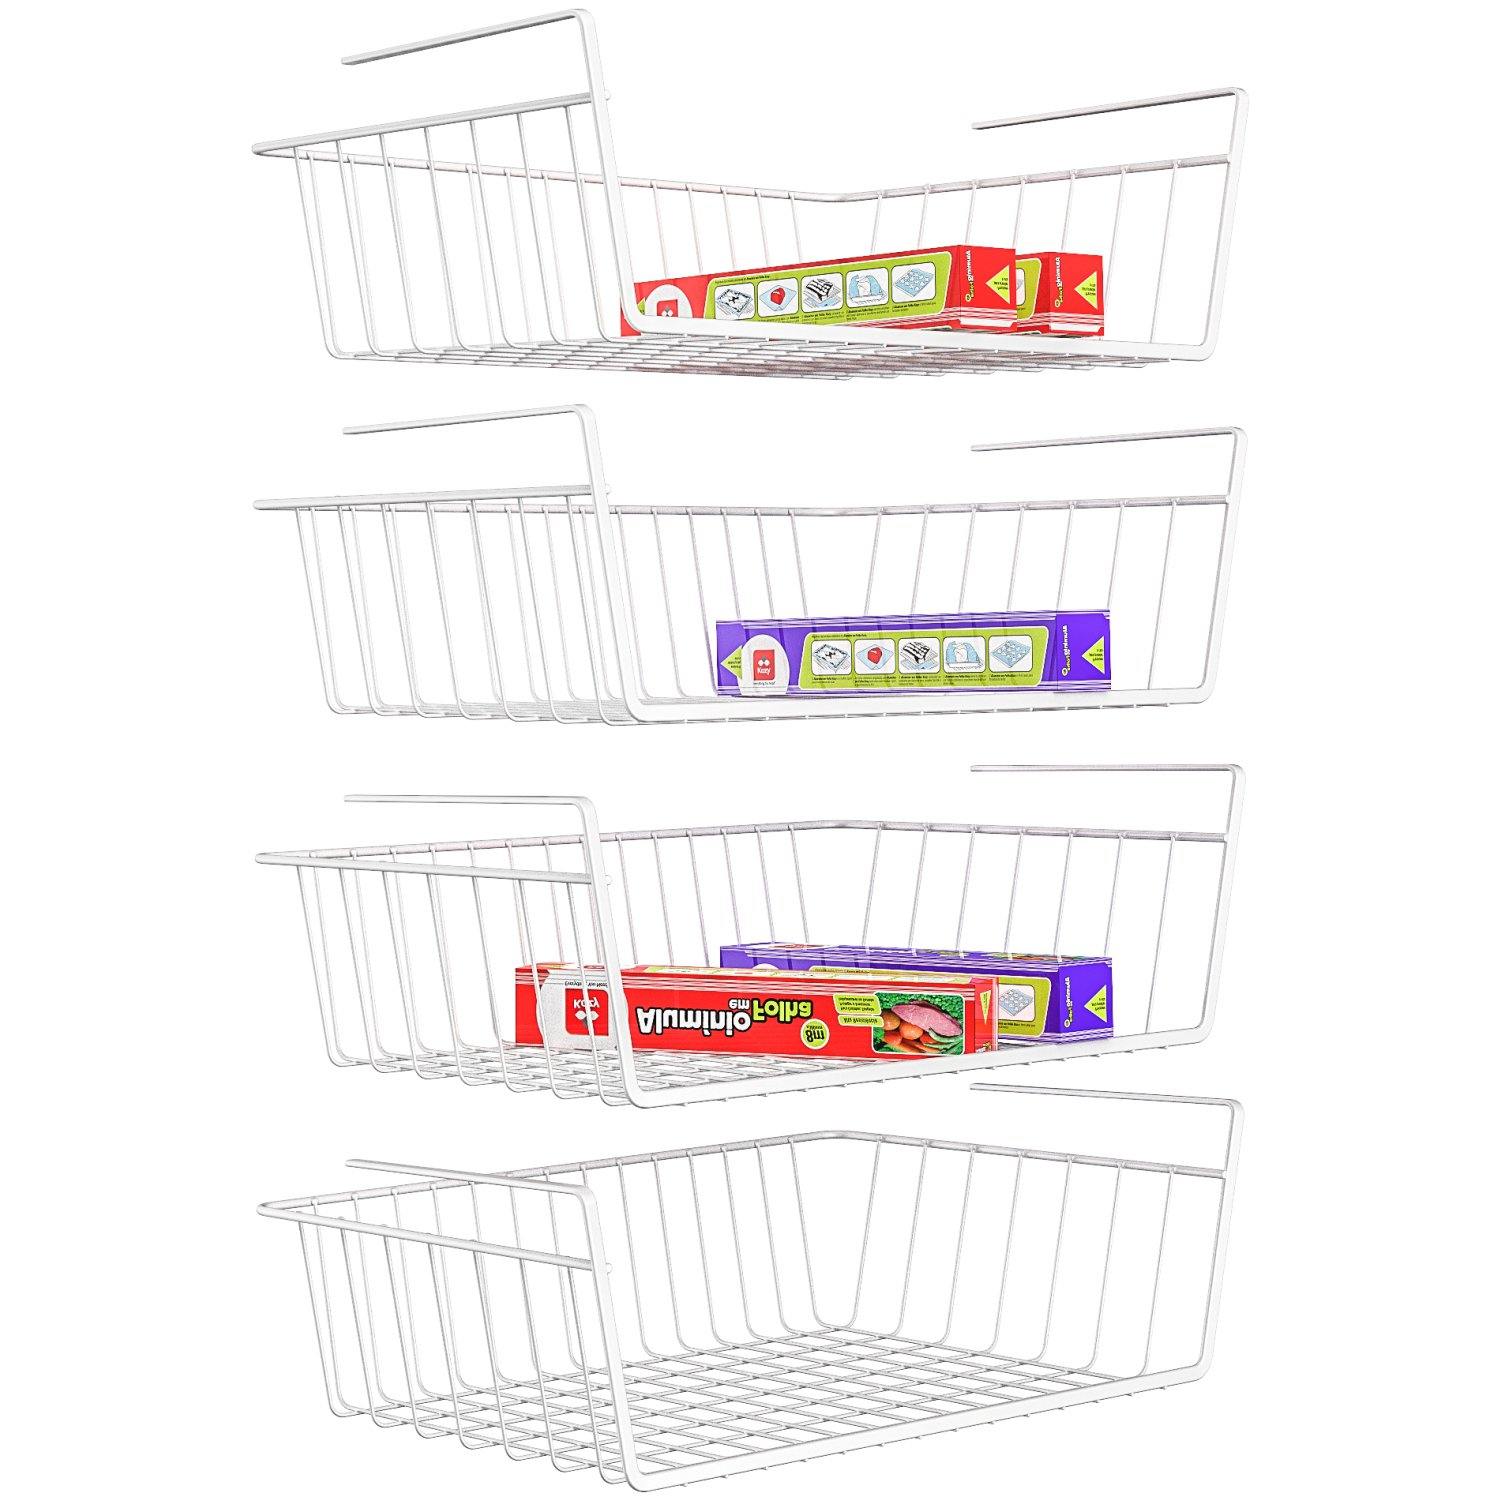 Hanging Under Shelf Storage Basket (4 Pack) - HR024, White